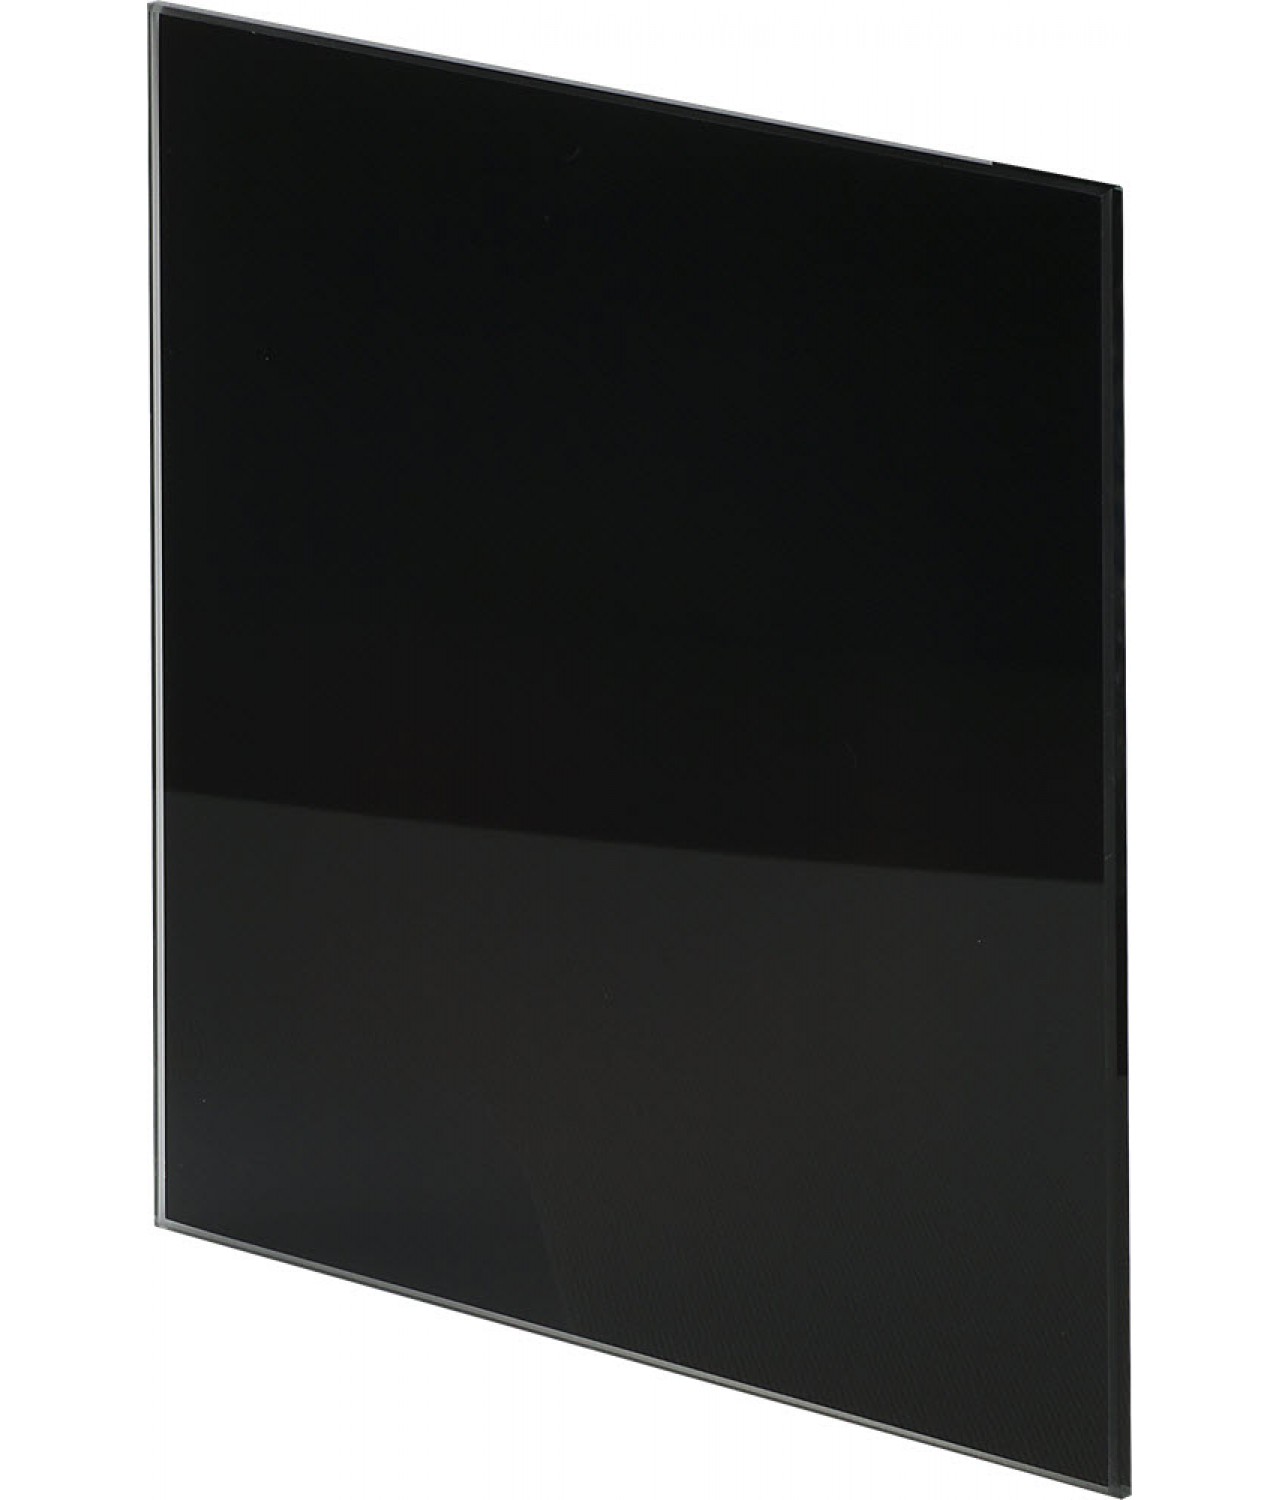 Интерьерная панель PTGB100P - TRAX GLASS black glossy